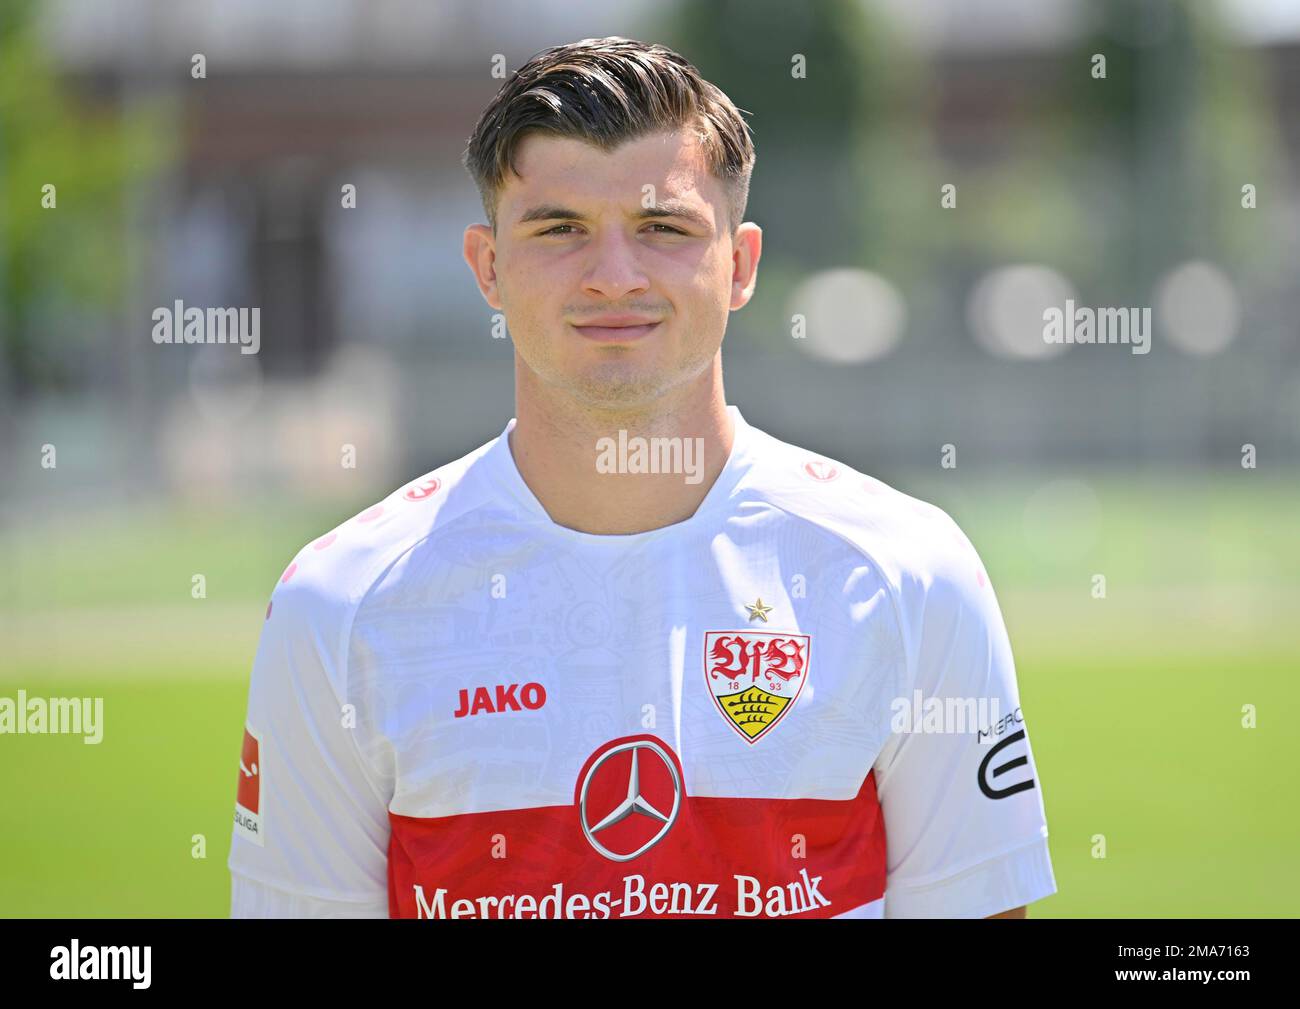 Antonis Aidonis VfB Stuttgart Portraittermin VfB Stuttgart 2022 2023 Licence Player Football 1. Bundesliga Men GER Stuttgart 05. 07. 2022 Stockfoto